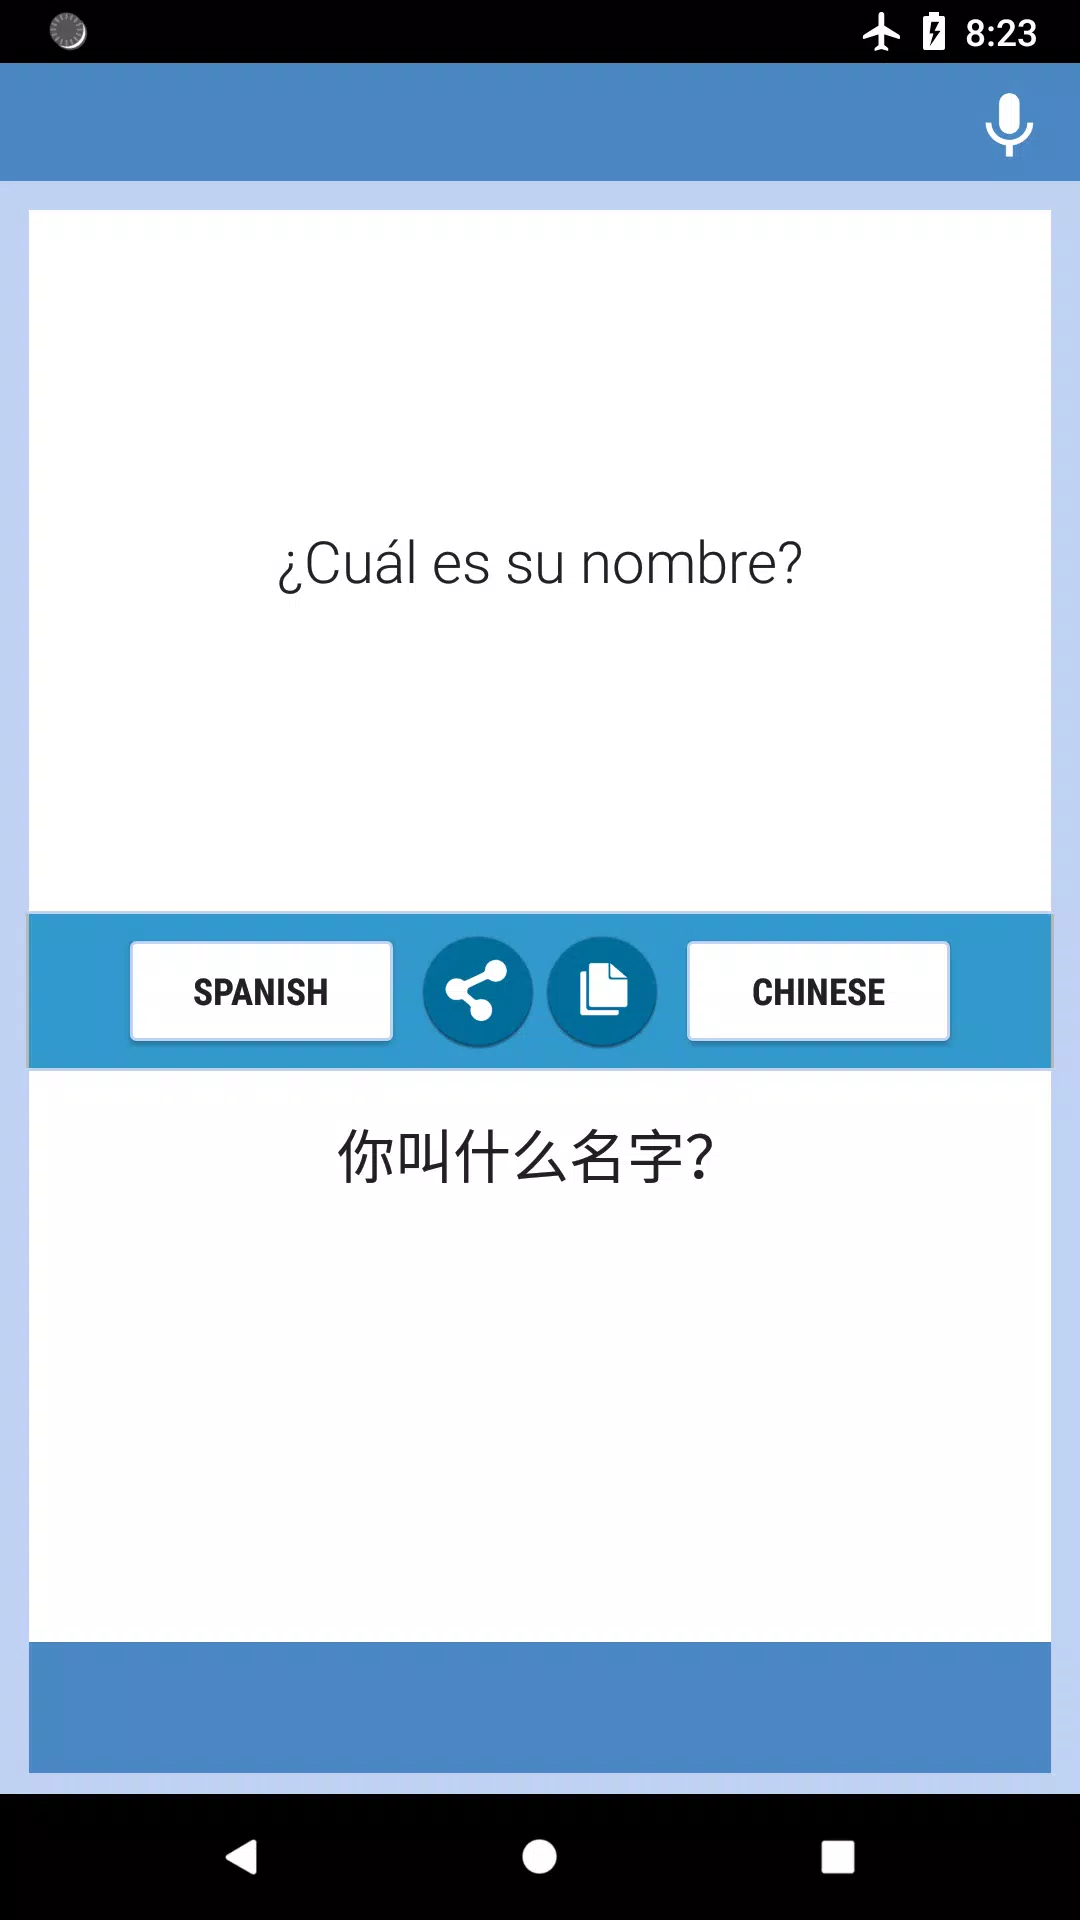 el viento es fuerte mármol Limpia el cuarto Descarga de APK de Español-Chino Traductor para Android